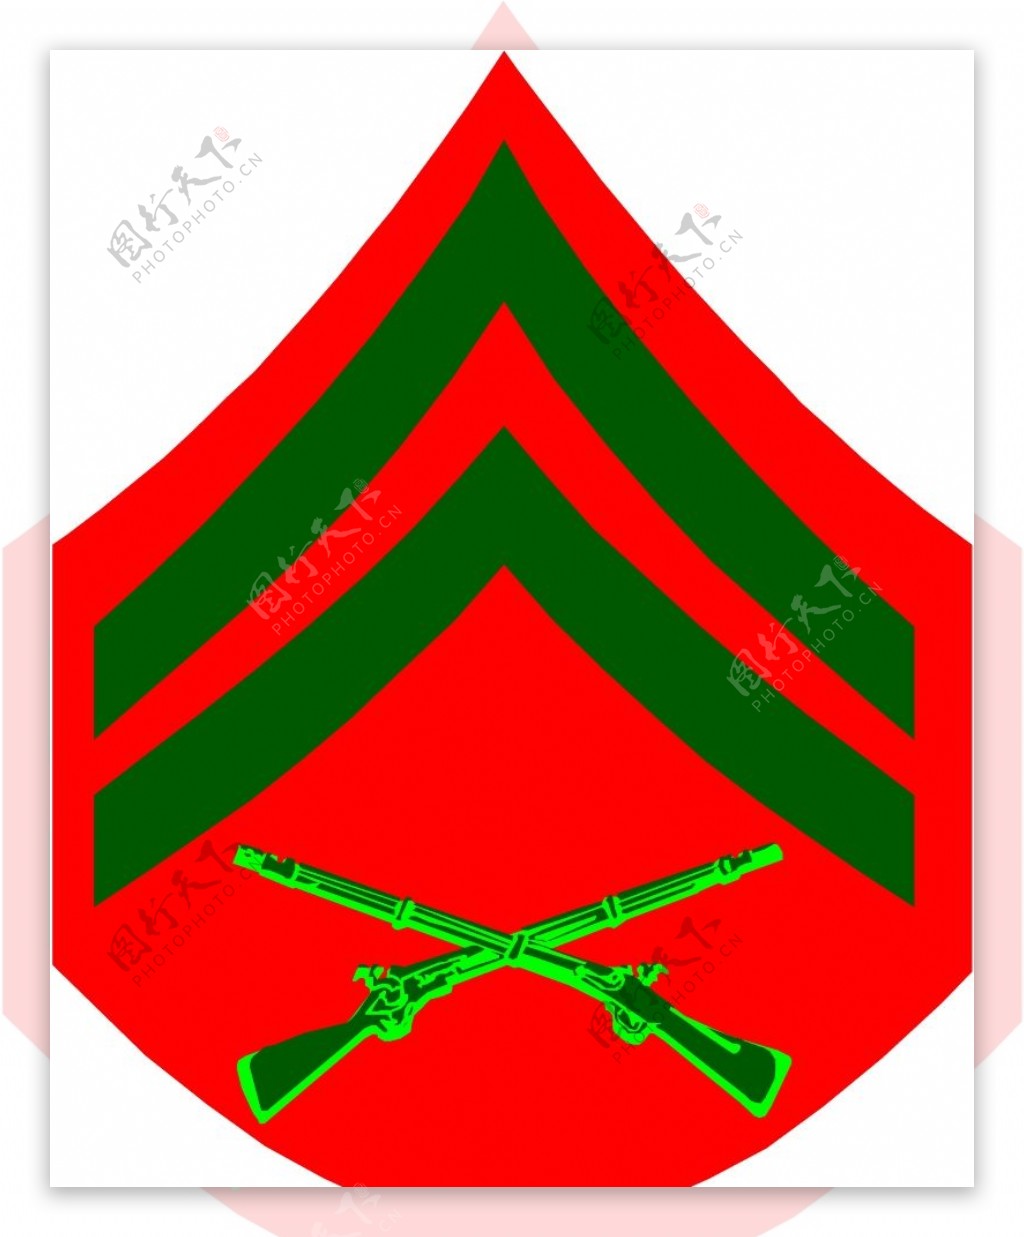 军队徽章0247